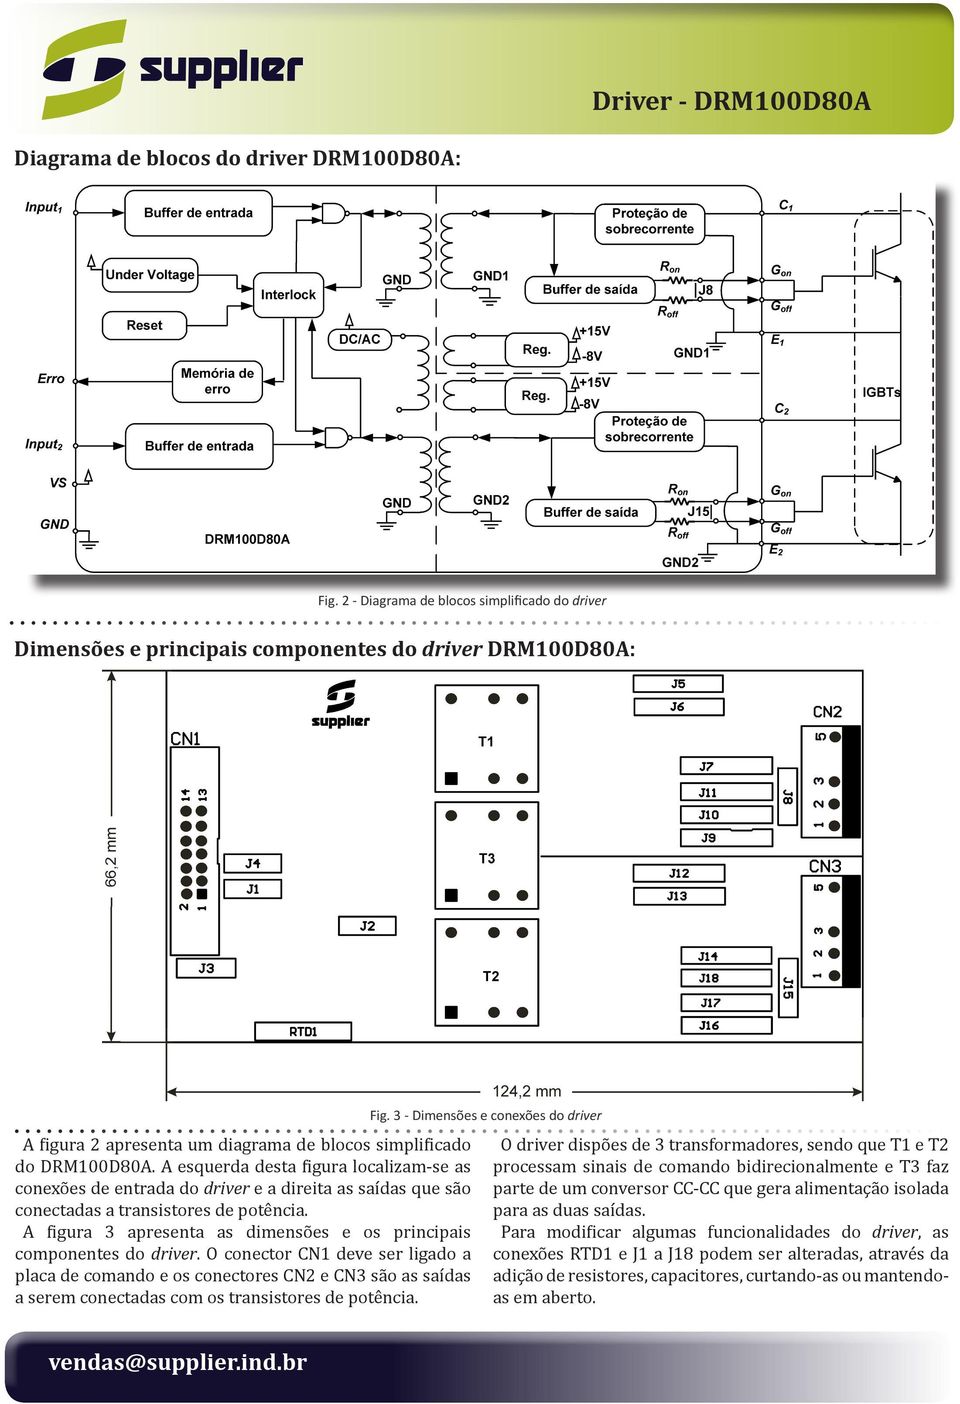 e os principais componentes do driver O conector CN1 deve ser ligado a placa de comando e os conectores CN2 e CN3 são as saídas a serem conectadas com os transistores de potência Fig 3 - Dimensões e